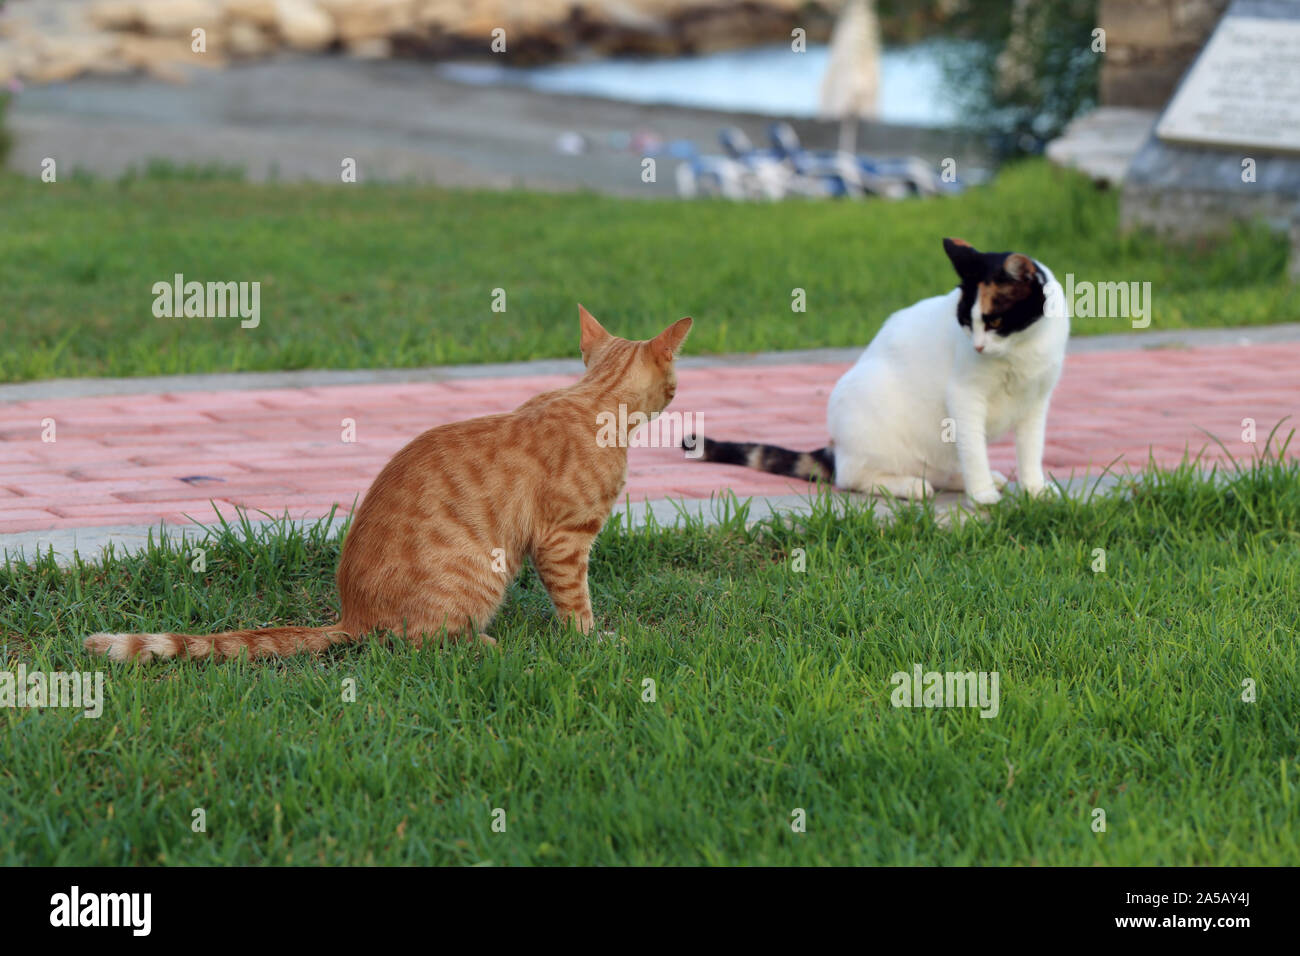 Los gatos adultos silvestres que viven en Chipre. Lindo, suave y peludo gatos, uno naranja rayas multicolores de uno y otro. Estos gatos están explorando la zona. Foto de stock